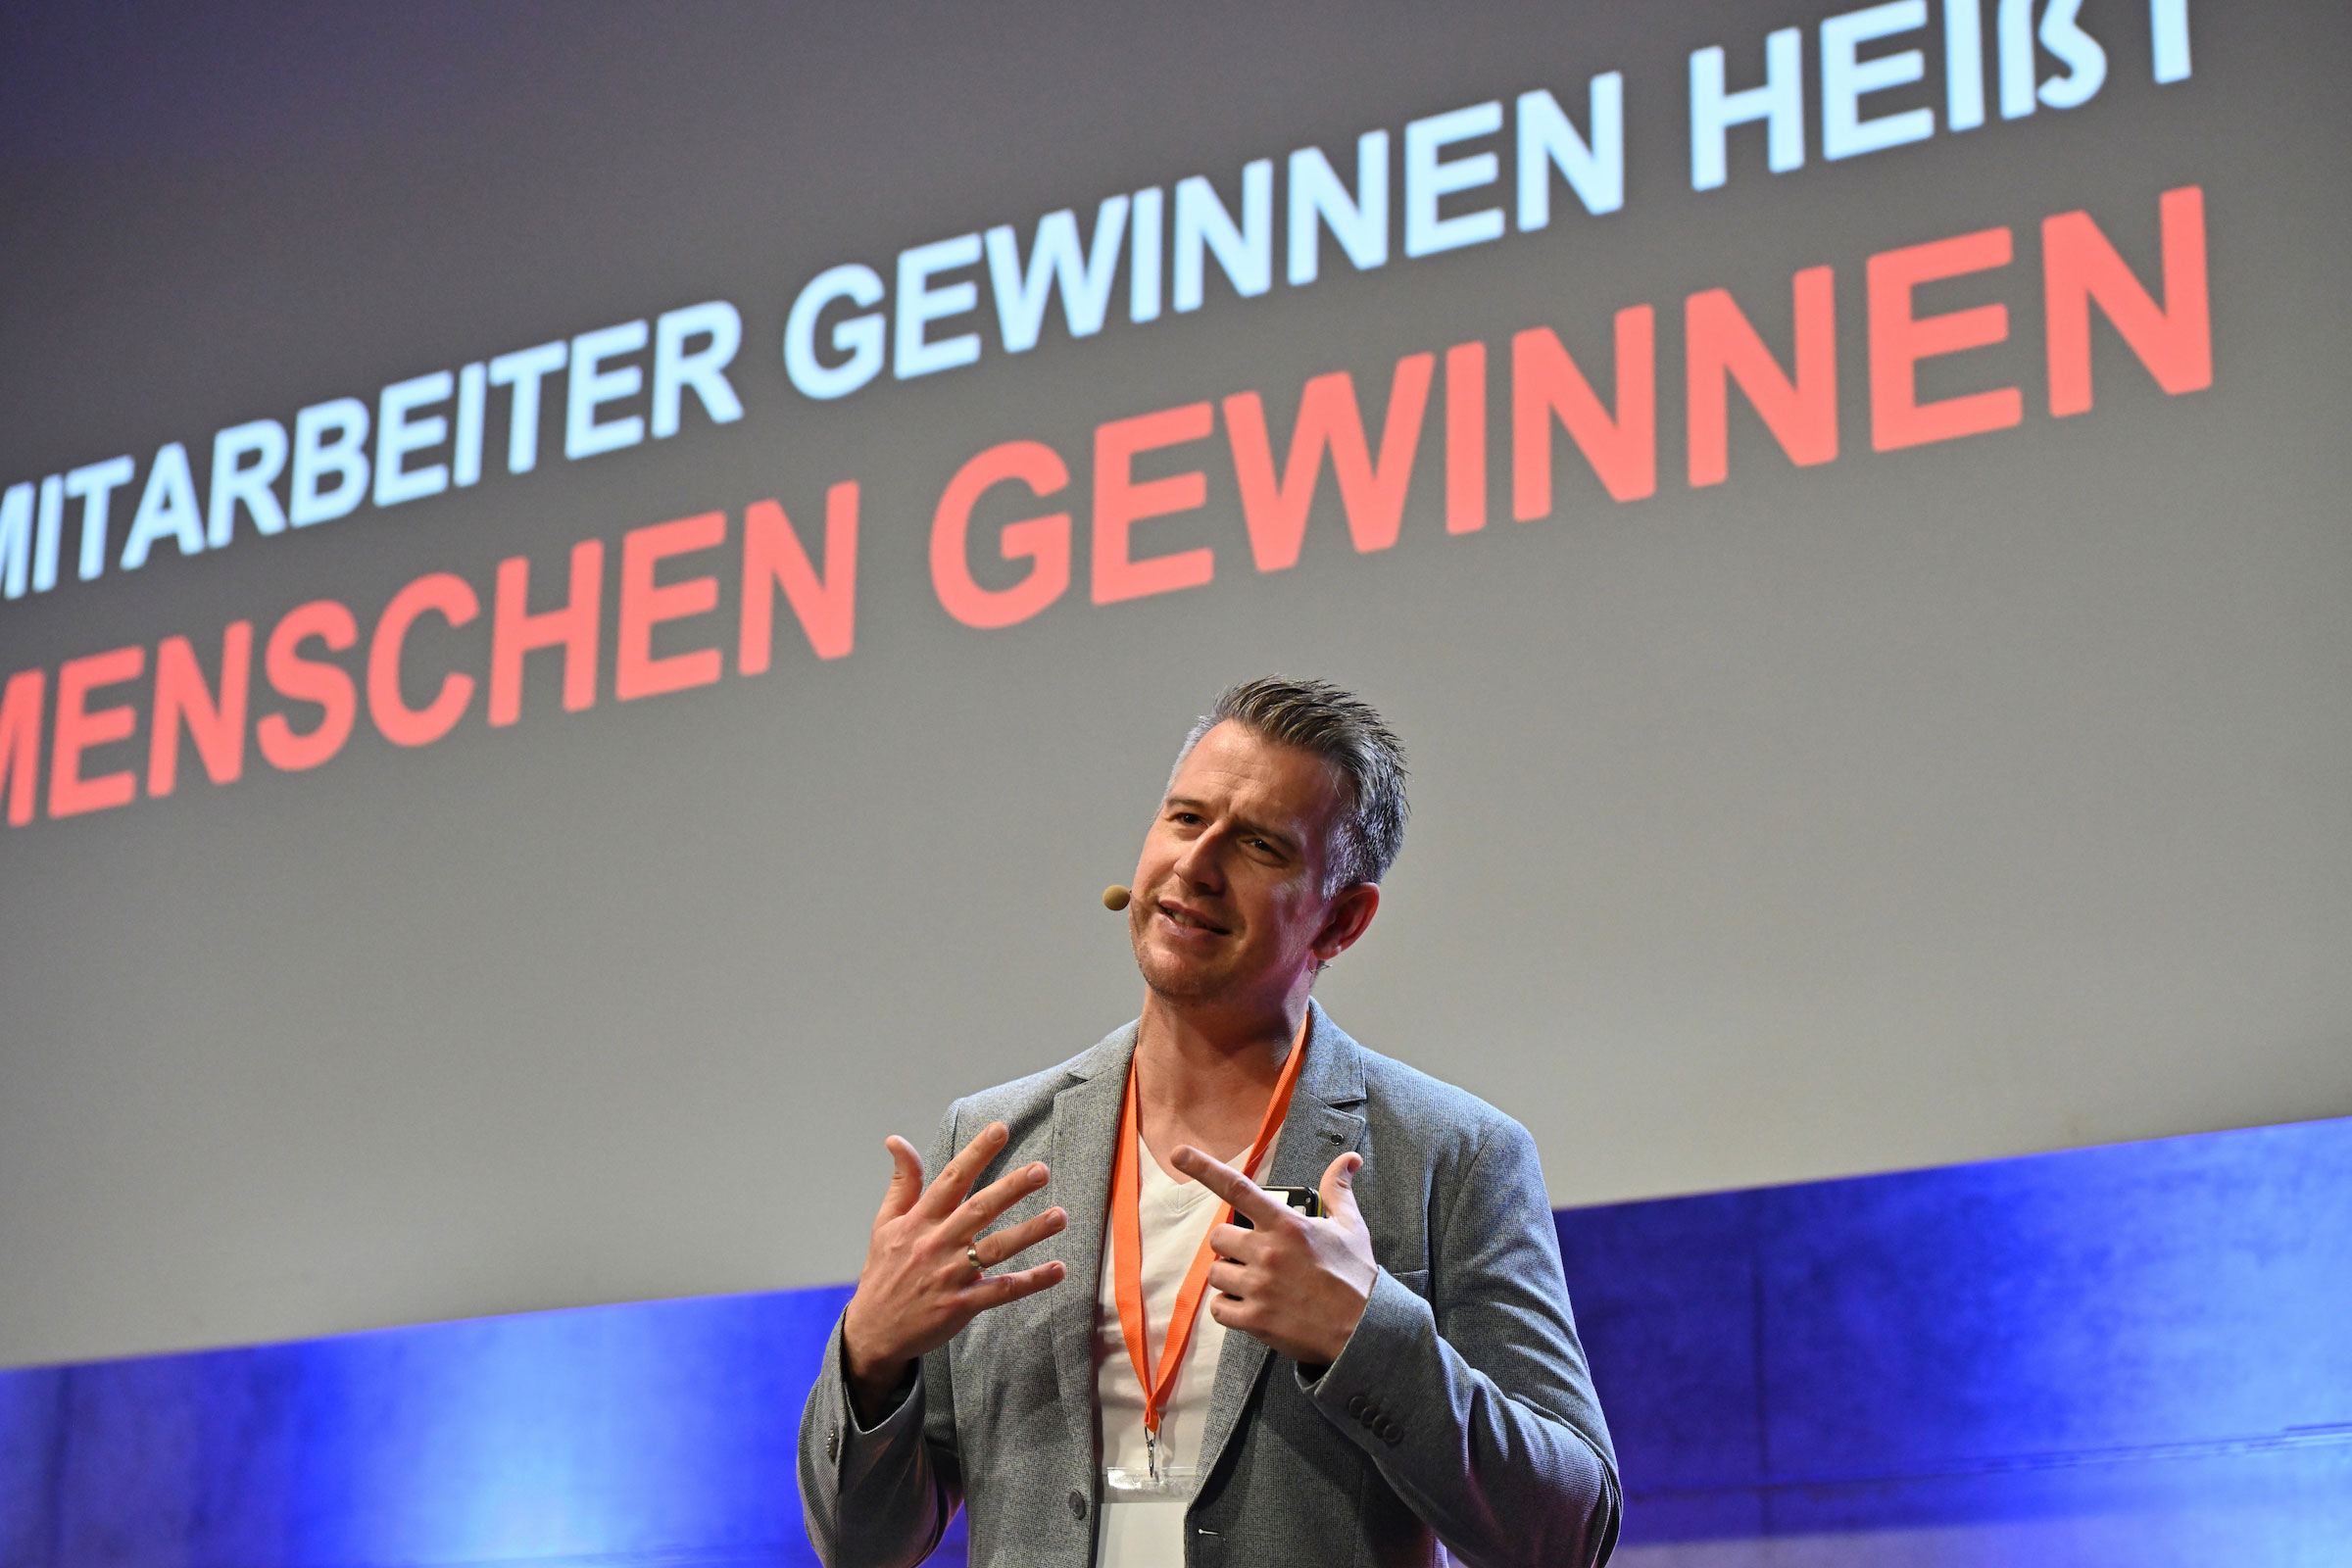 Jörg Mosler begeisterte die Zuschauer:innen mit seinem Impulsvortrag zum Thema Mitarbeitergewinnung. 